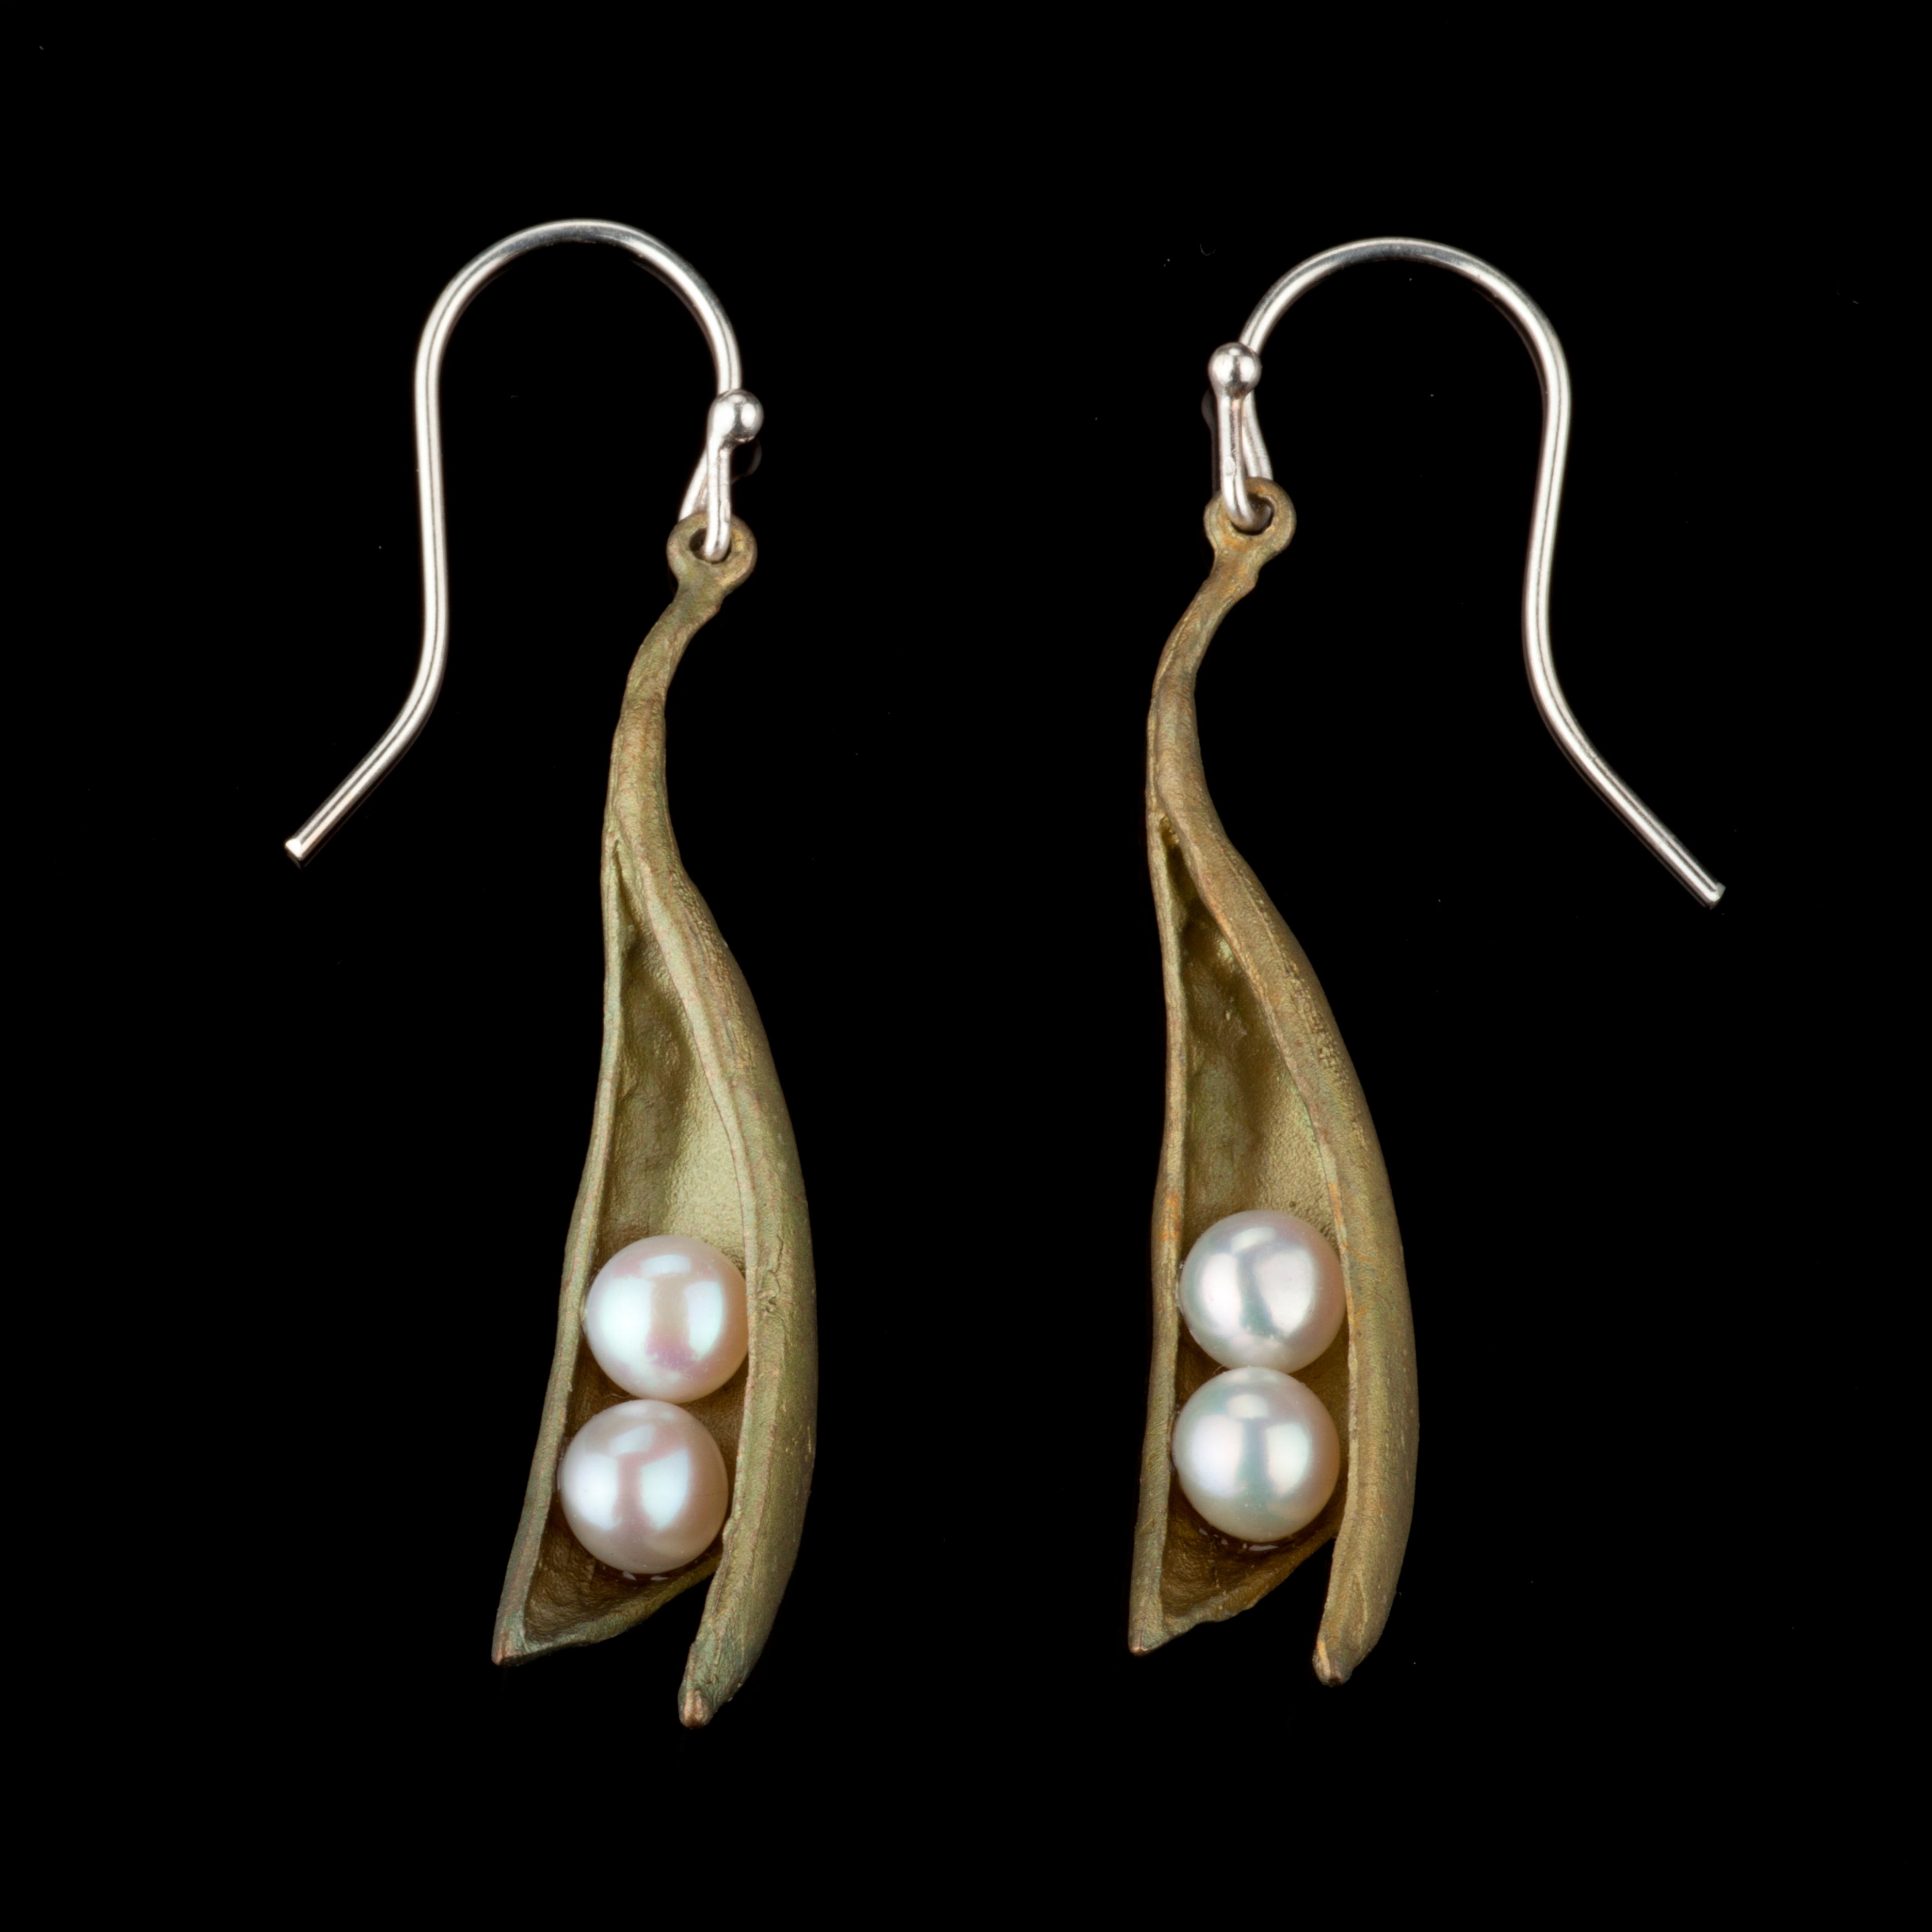 Pea Pod Earrings - The Nancy Smillie Shop - Art, Jewellery & Designer Gifts Glasgow